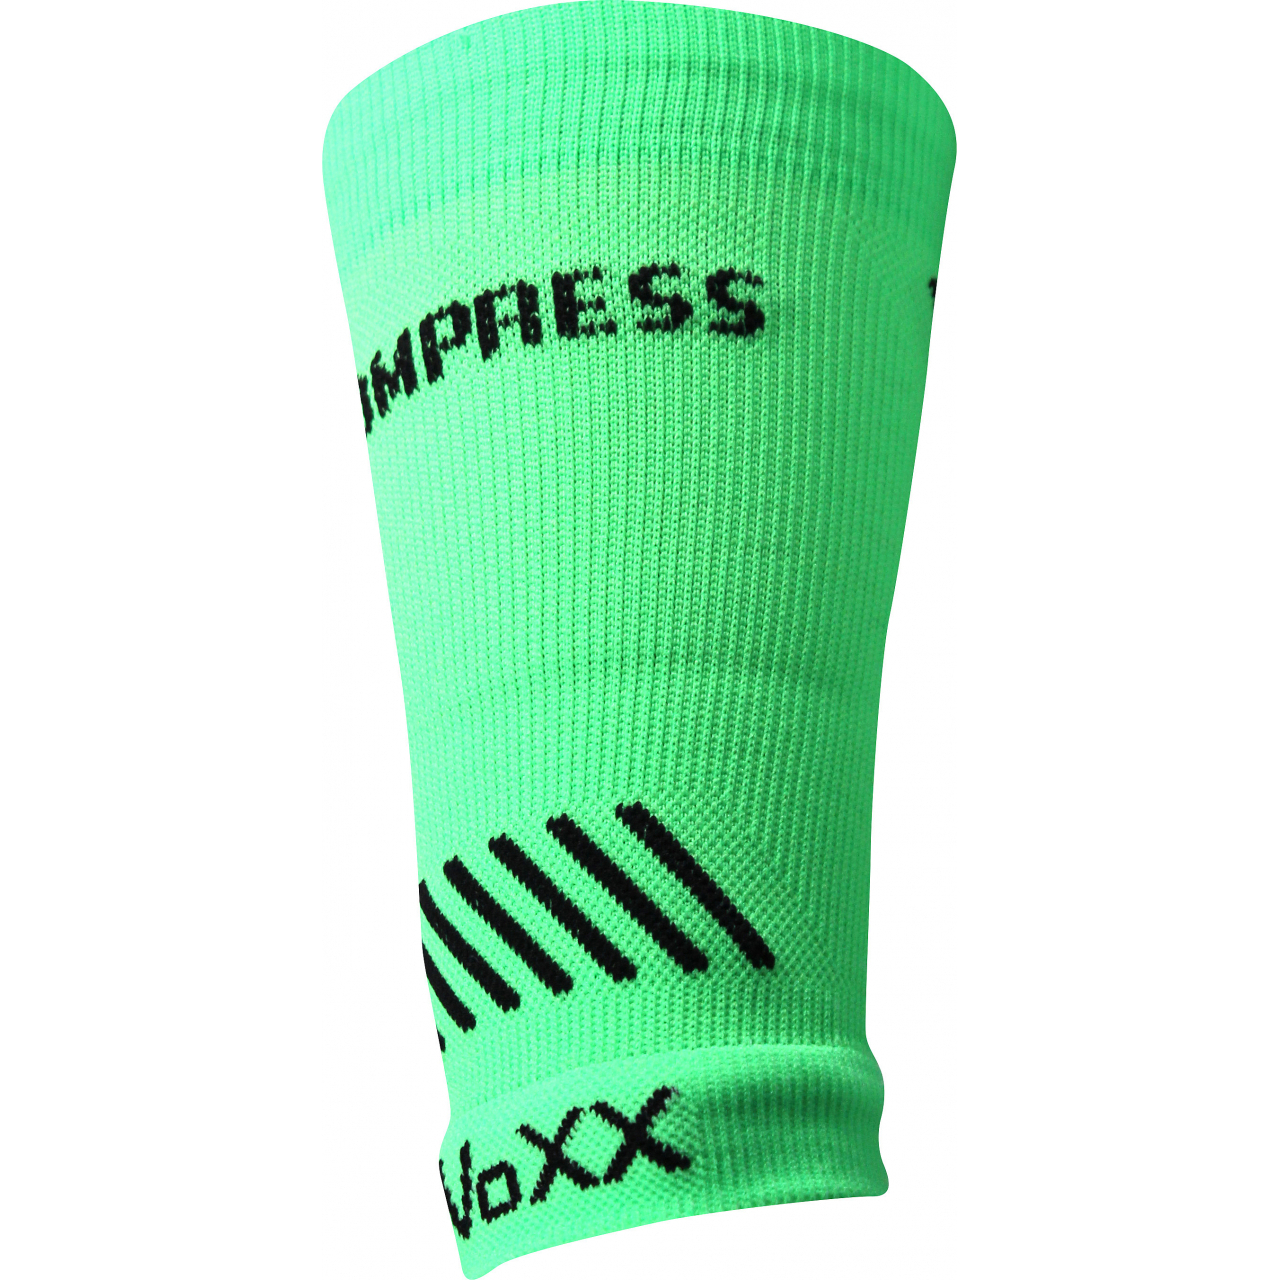 Návlek kompresní Voxx Protect zápěstí - zelený svítící, L/XL